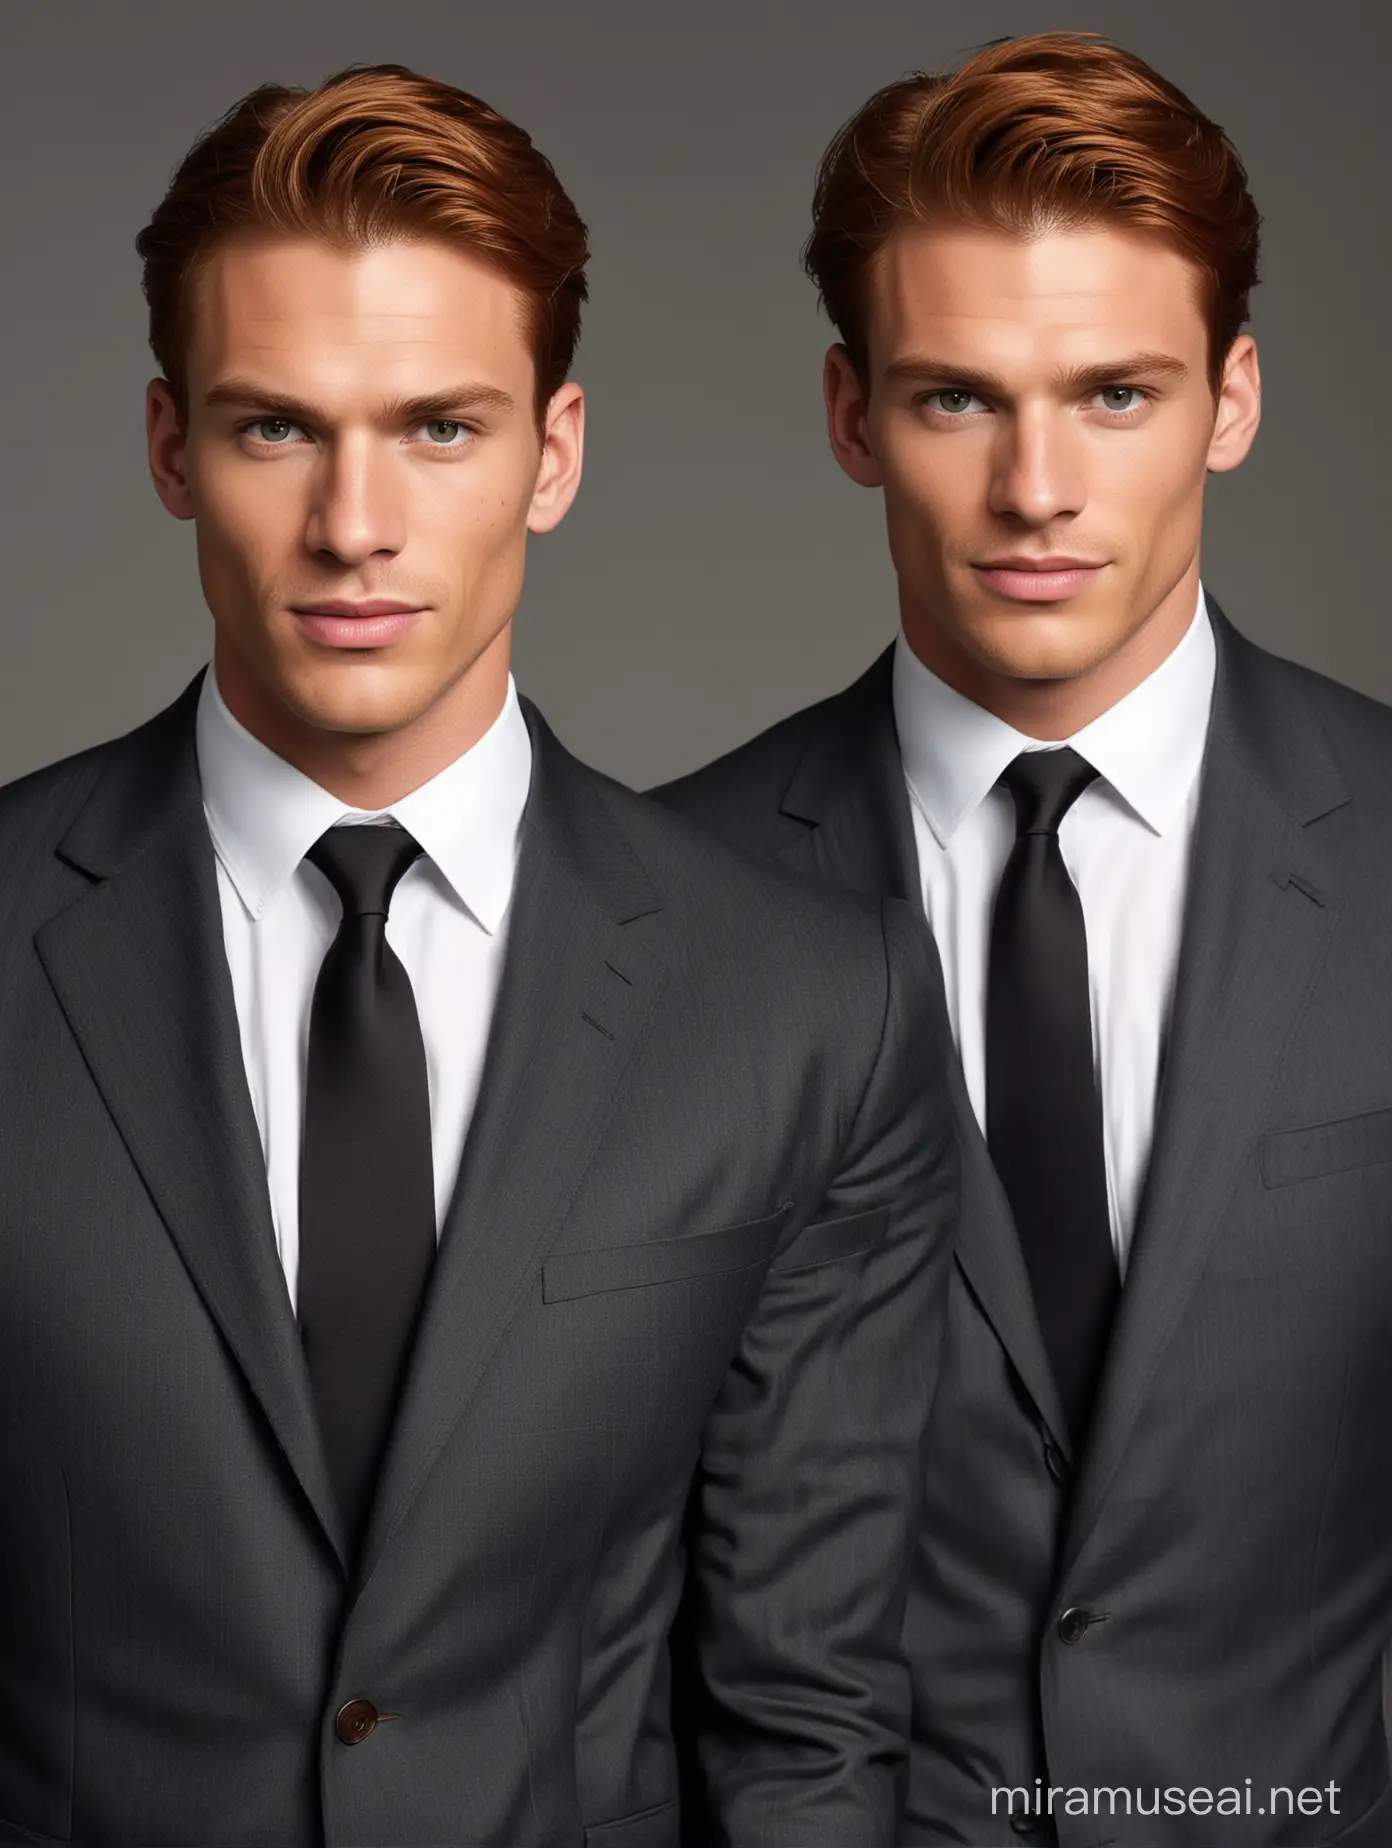 Dos hombres gemelos de cabello castaño rojizo, mandíbula cuadrada, guapos, fuertes y musculosos de treinta años con trajes color carbón a la medida 